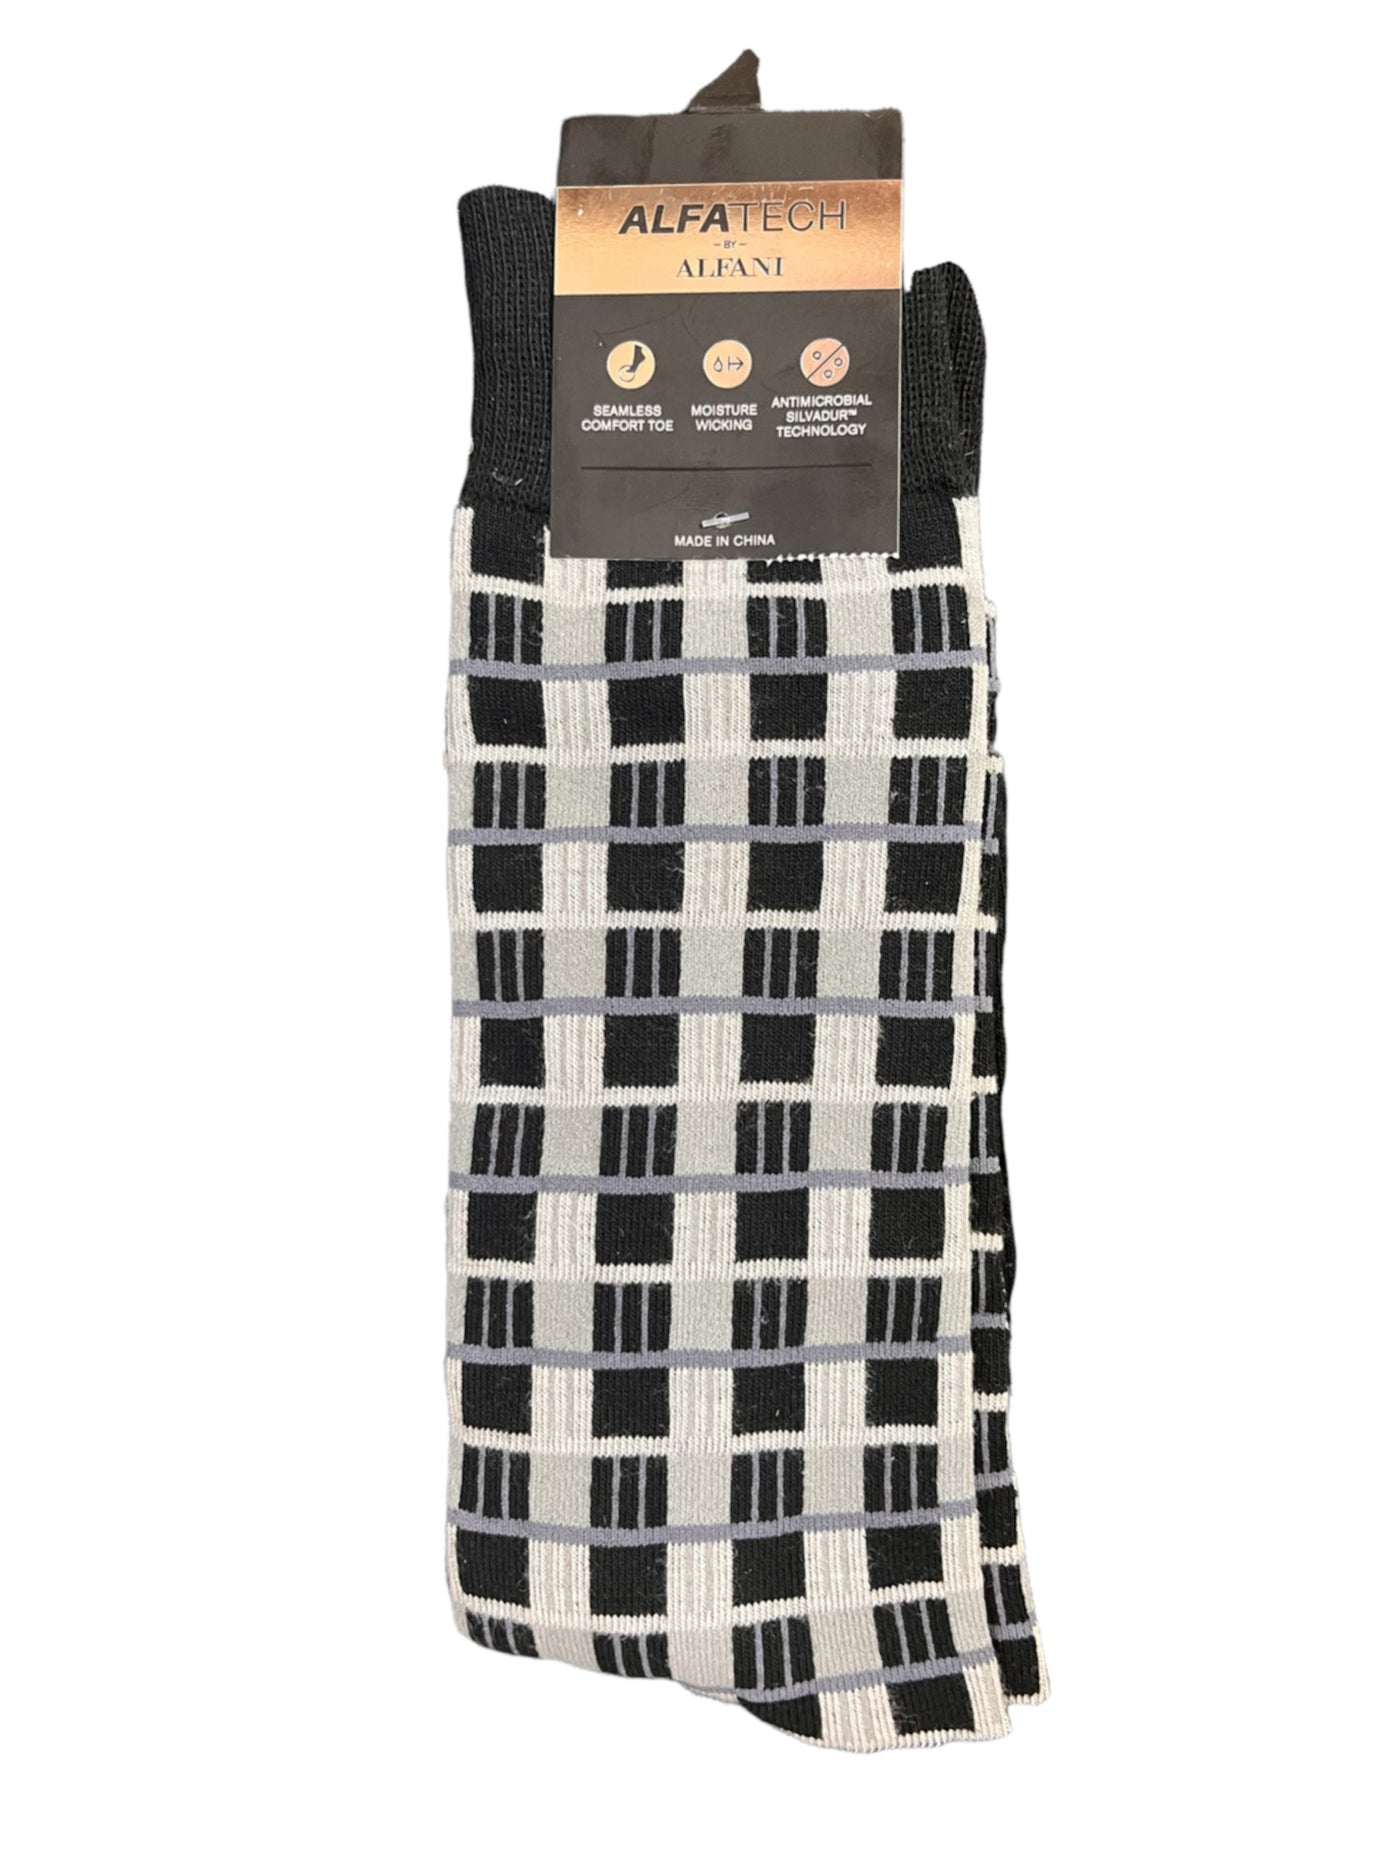 ALFATECH BY ALFANI Mens Black Geometric Ribbed-Knit Cuff Seamless Dress Crew Socks 7-12